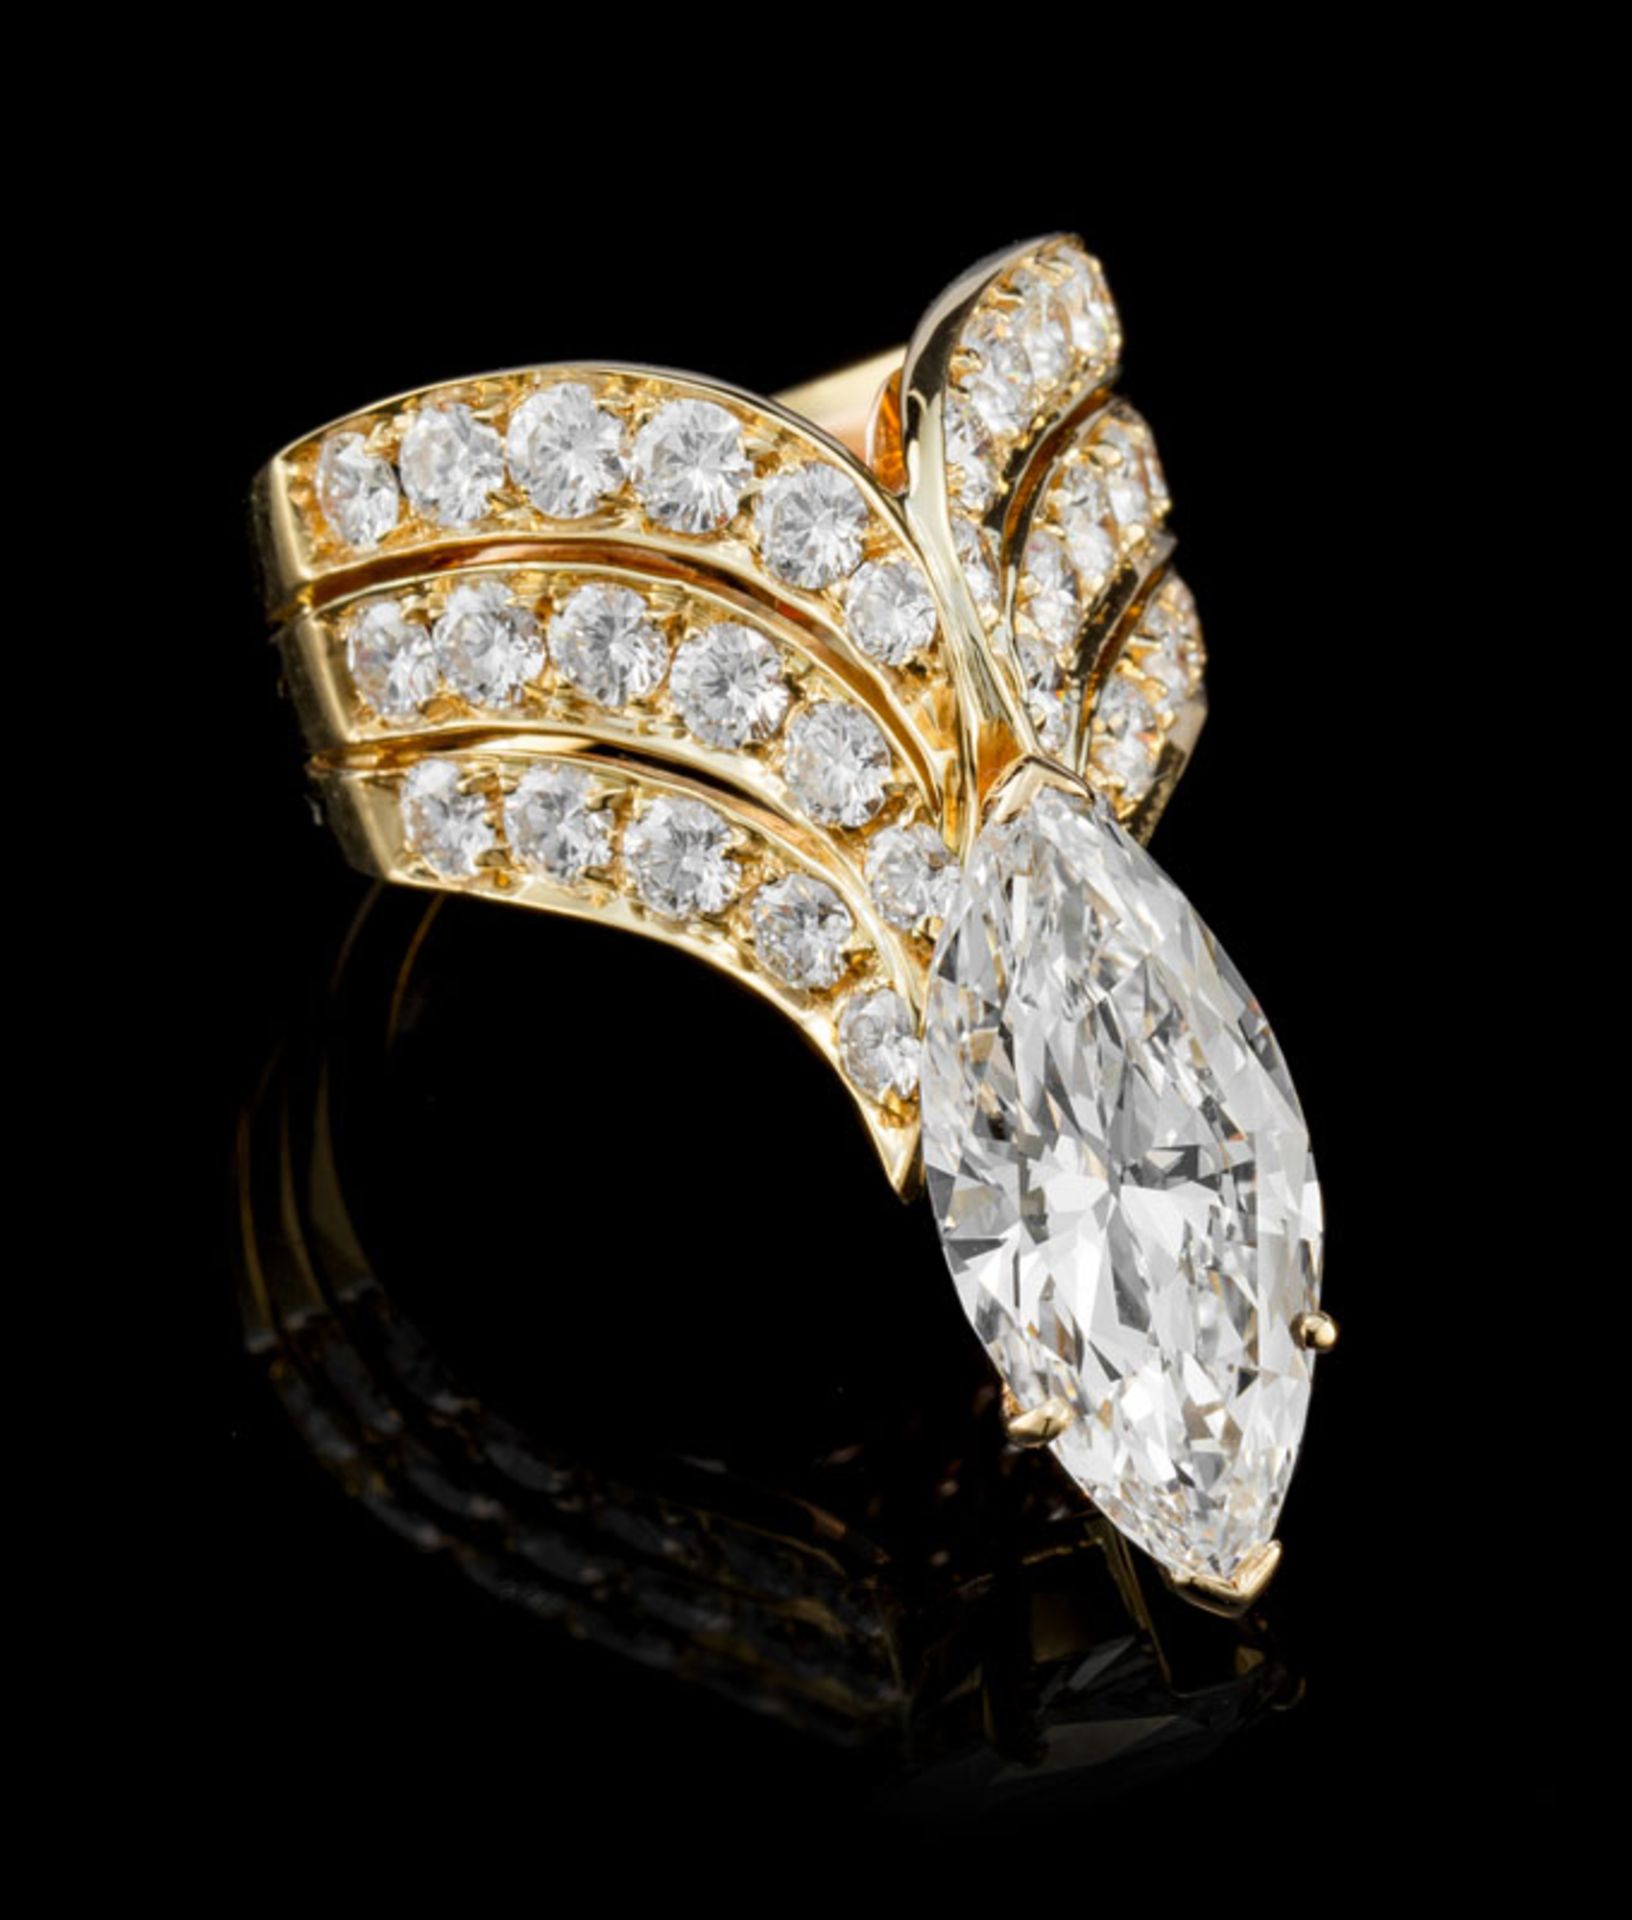 Bague or 750 à décor d'ailes stylisées serties de diamants se rejoingnant sous un diamants taille ma - Image 2 of 8